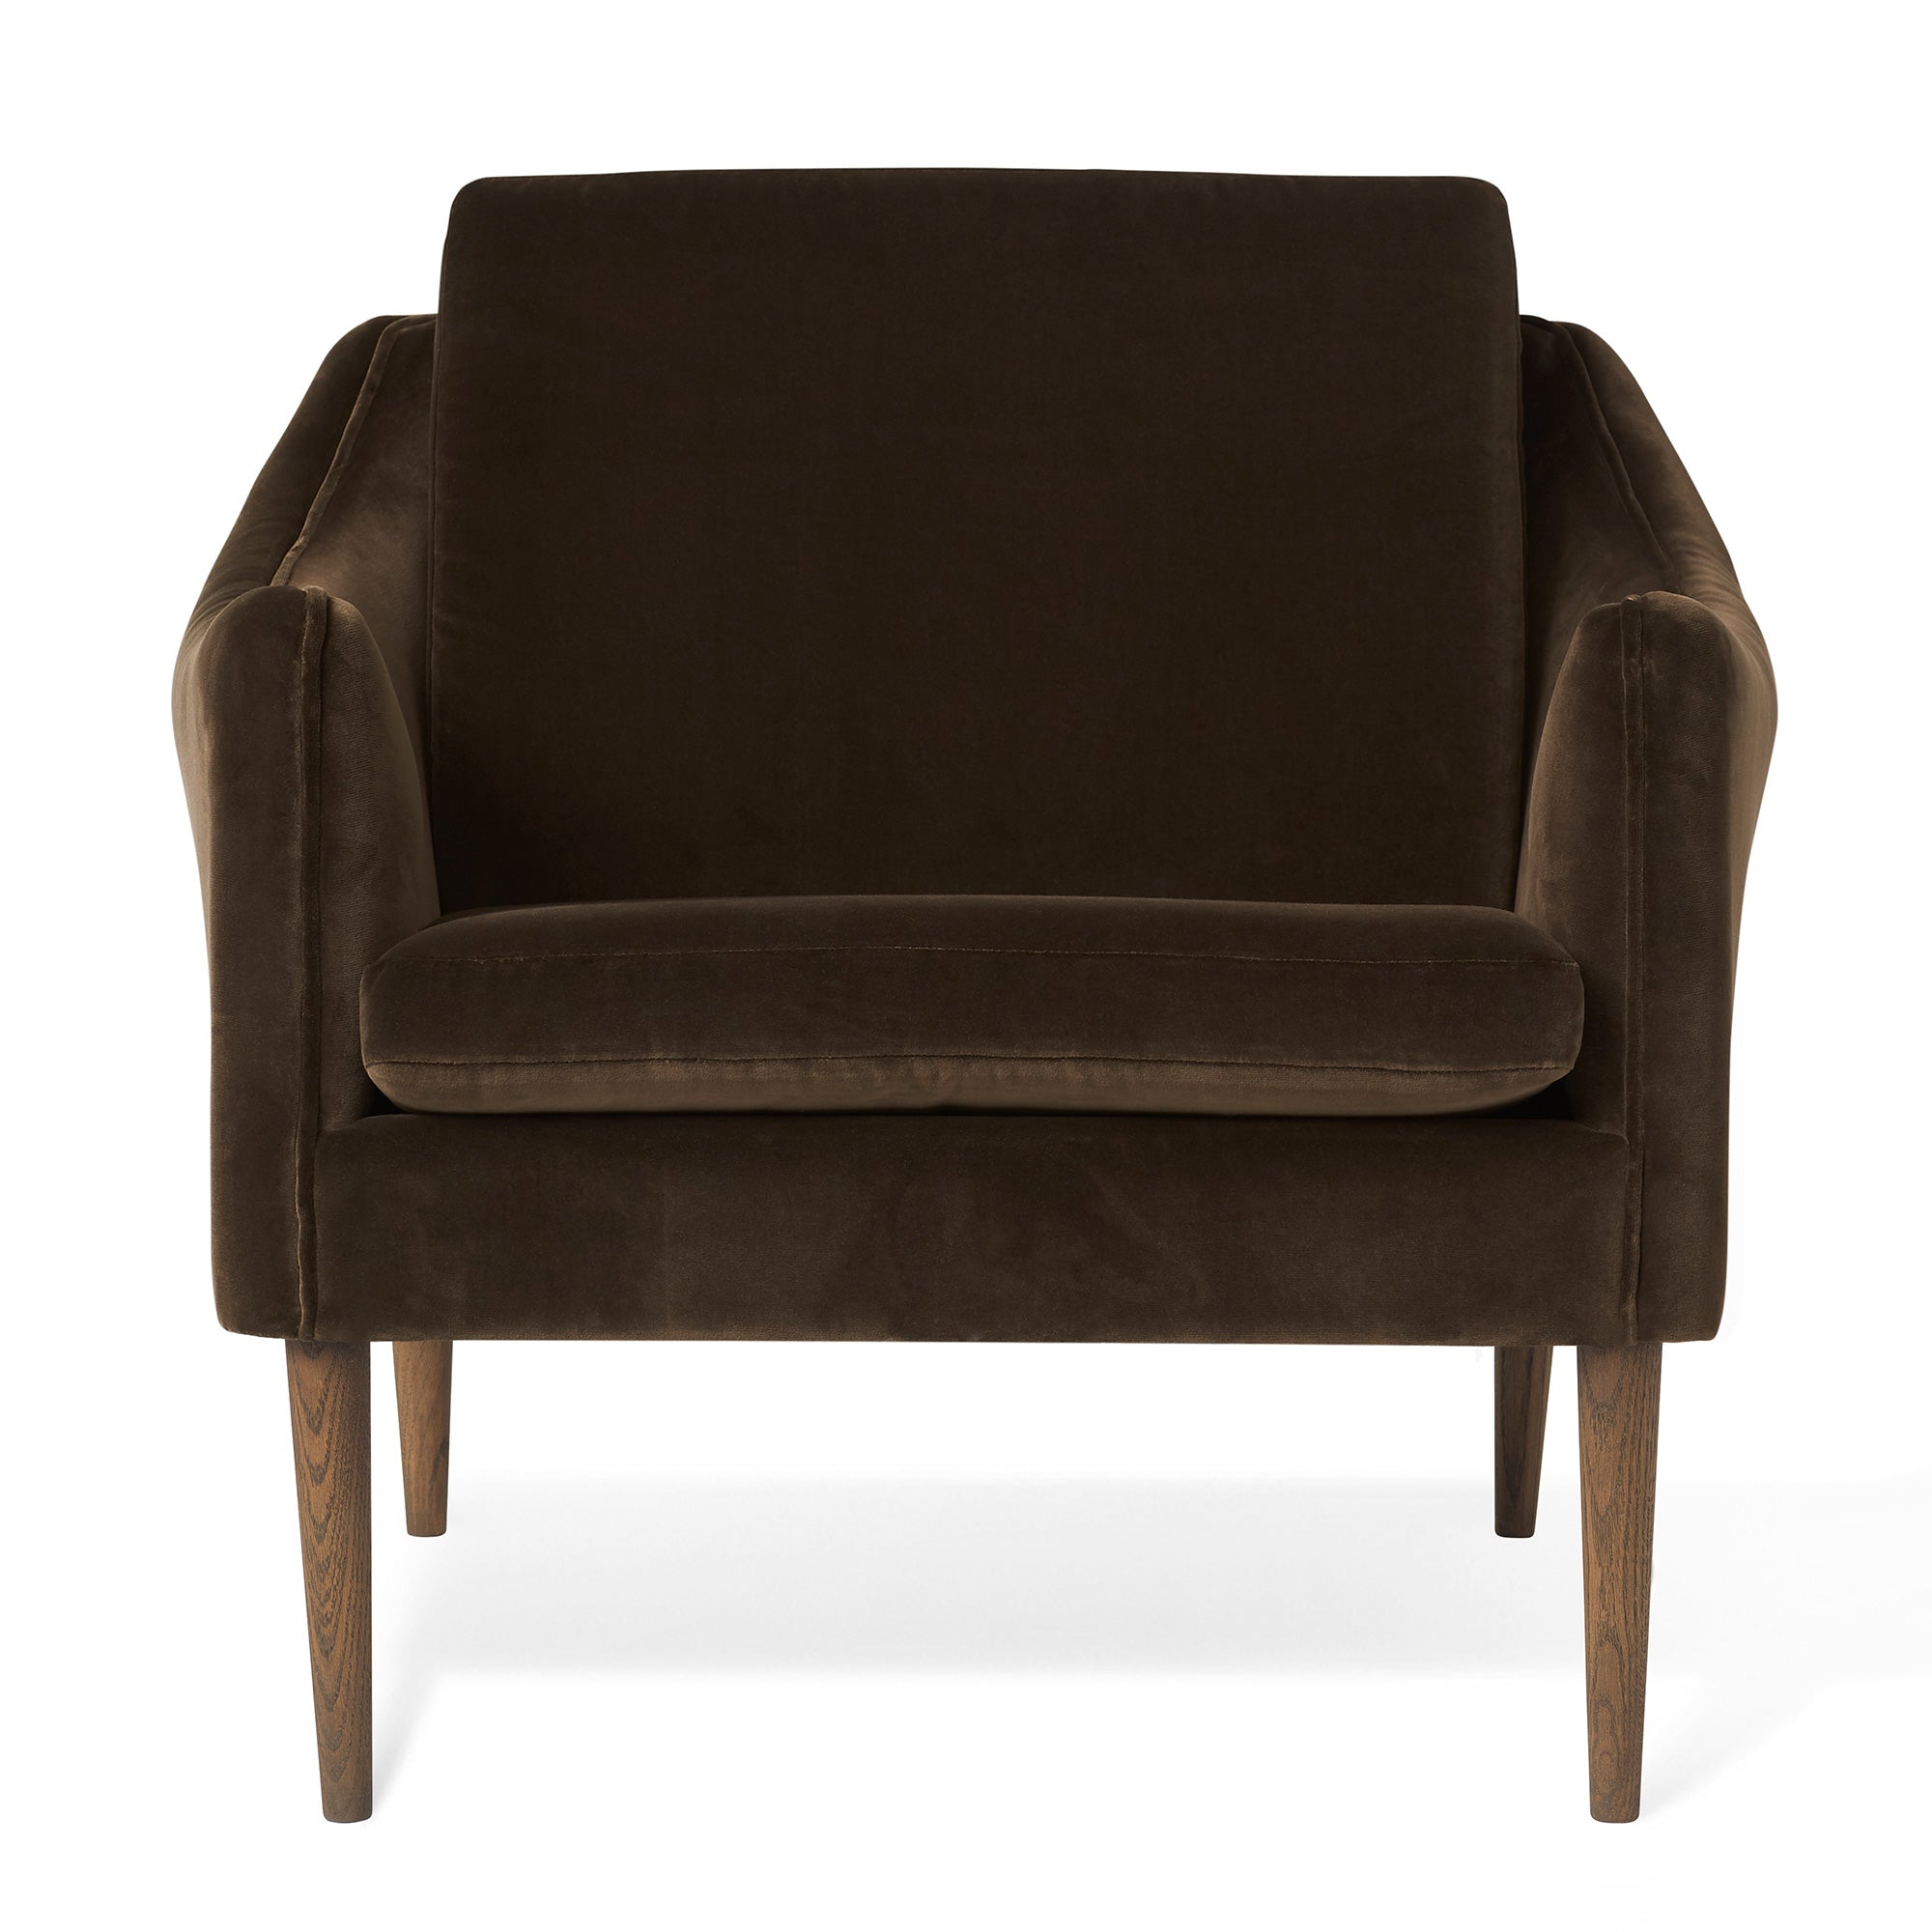 Sloane Black Velvet & Gold Accent Chair